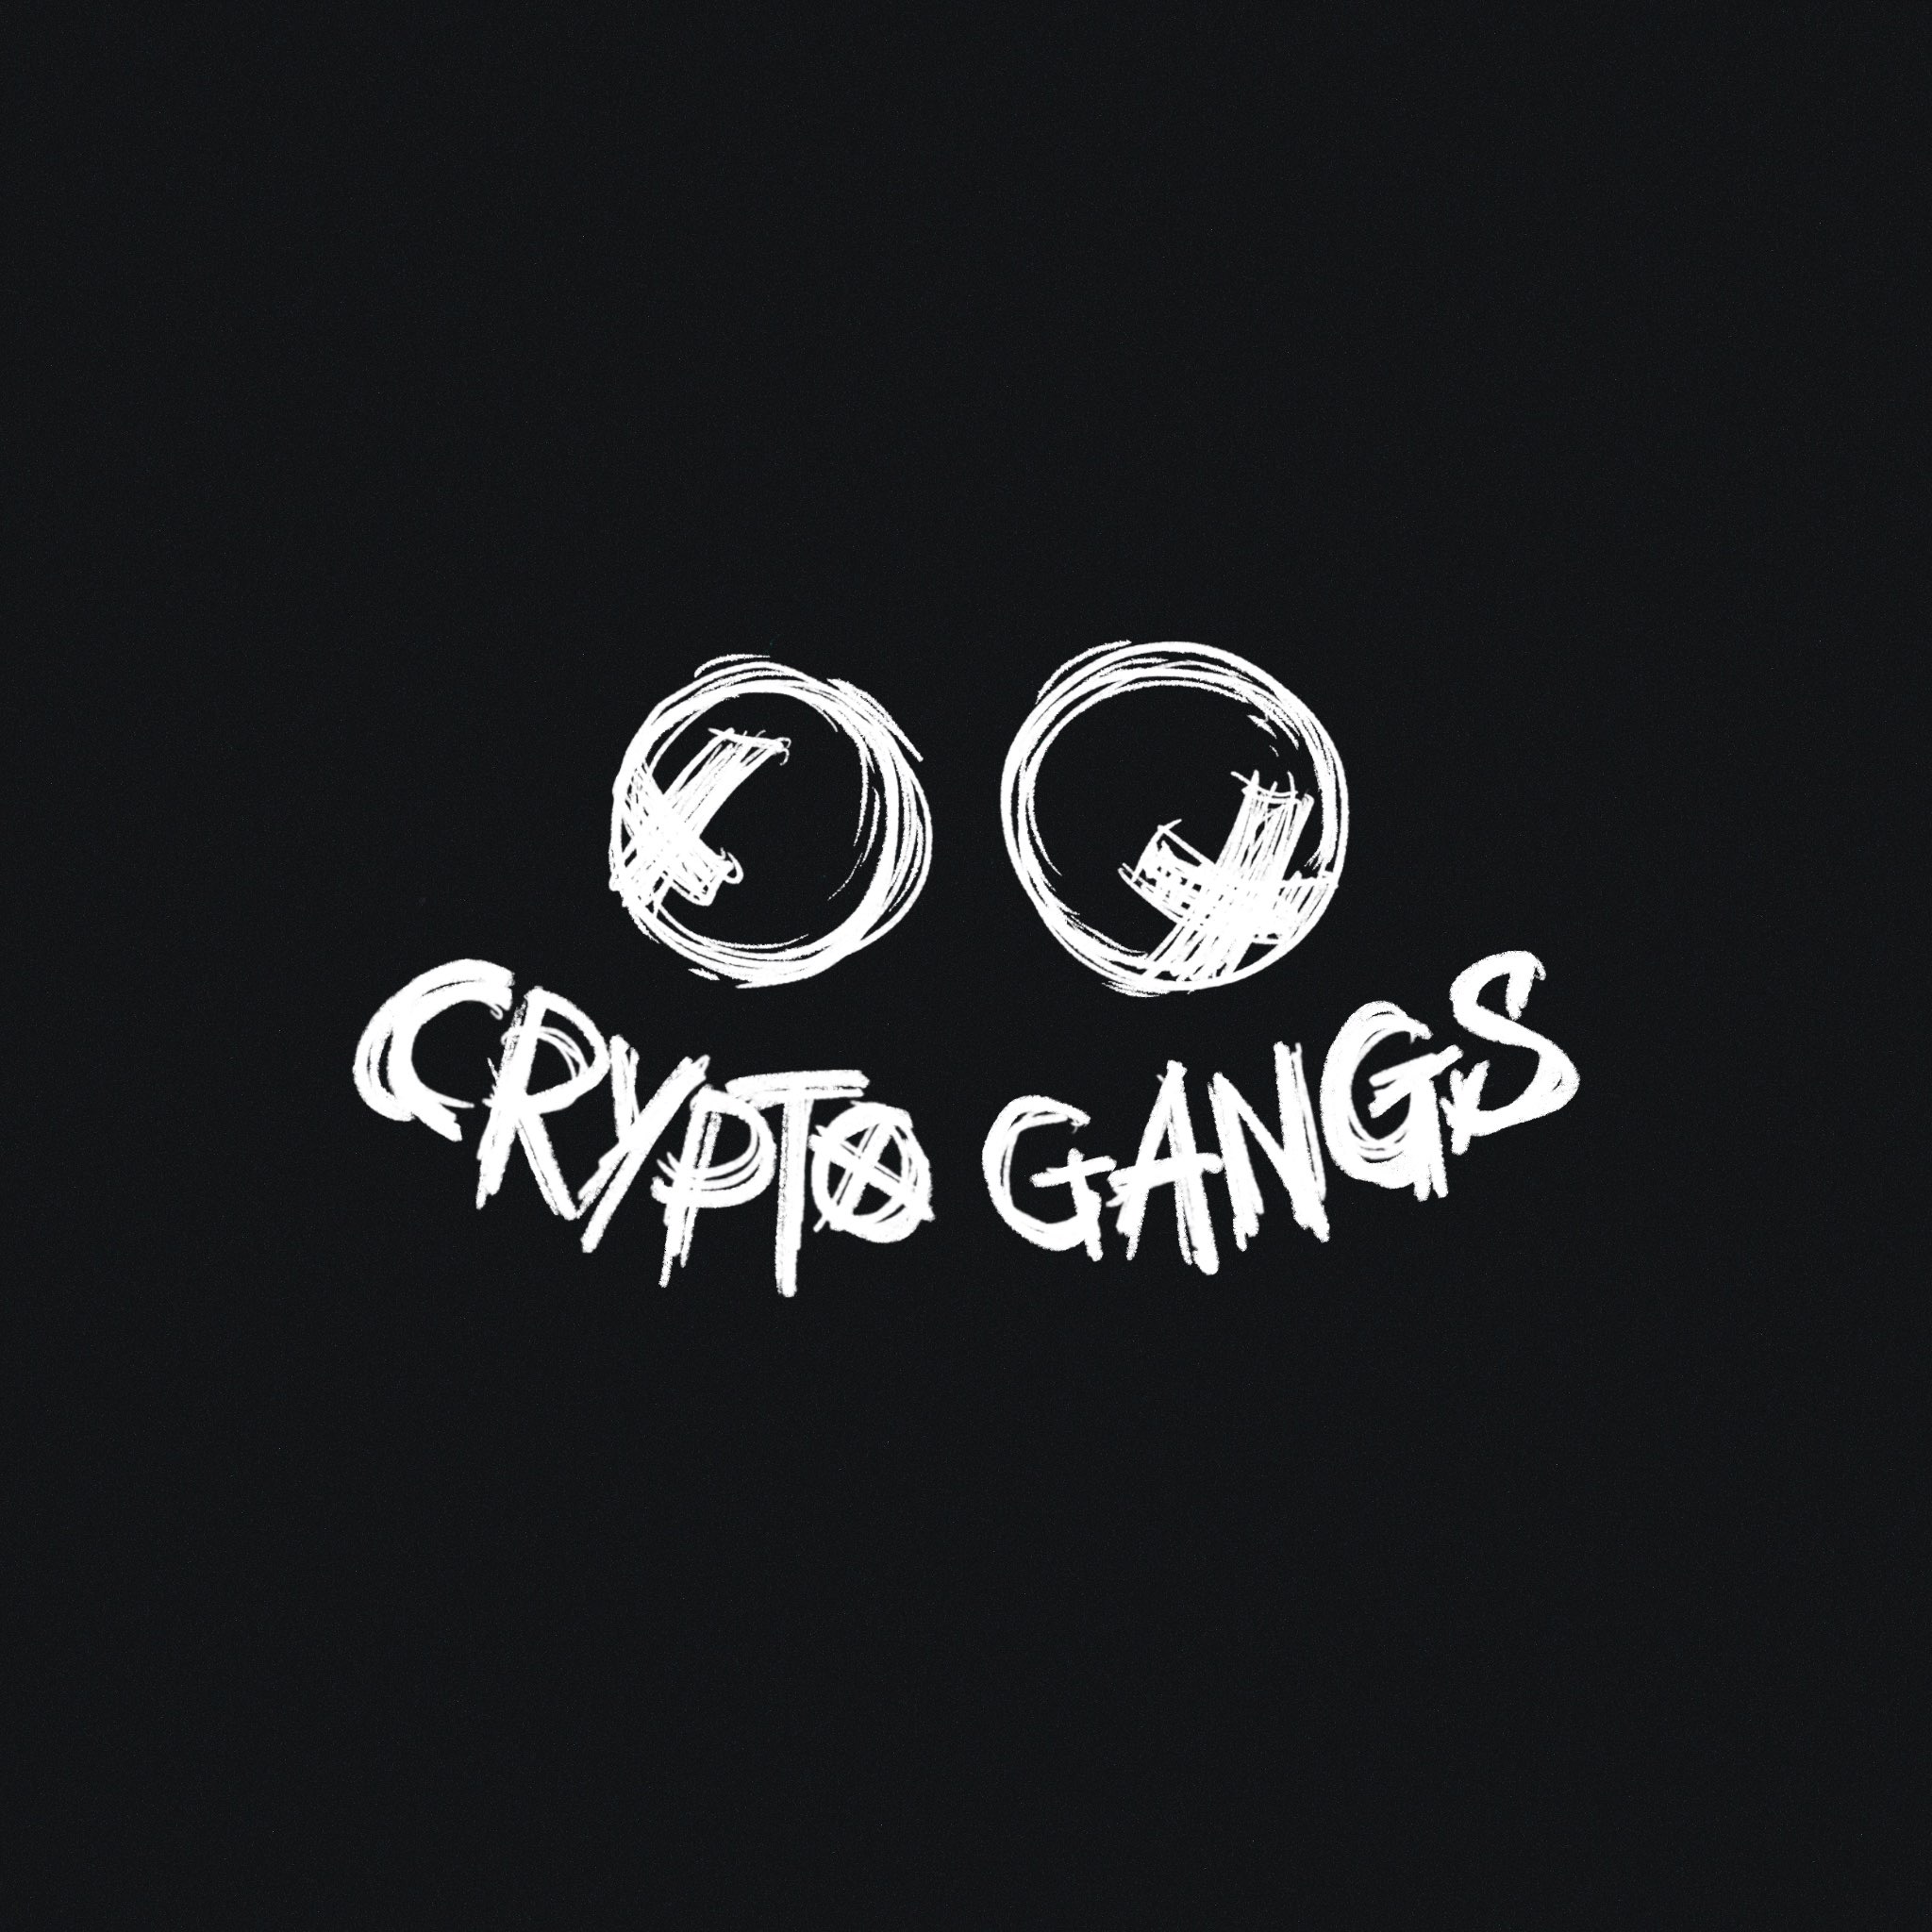 Crypto Gangs Genesis